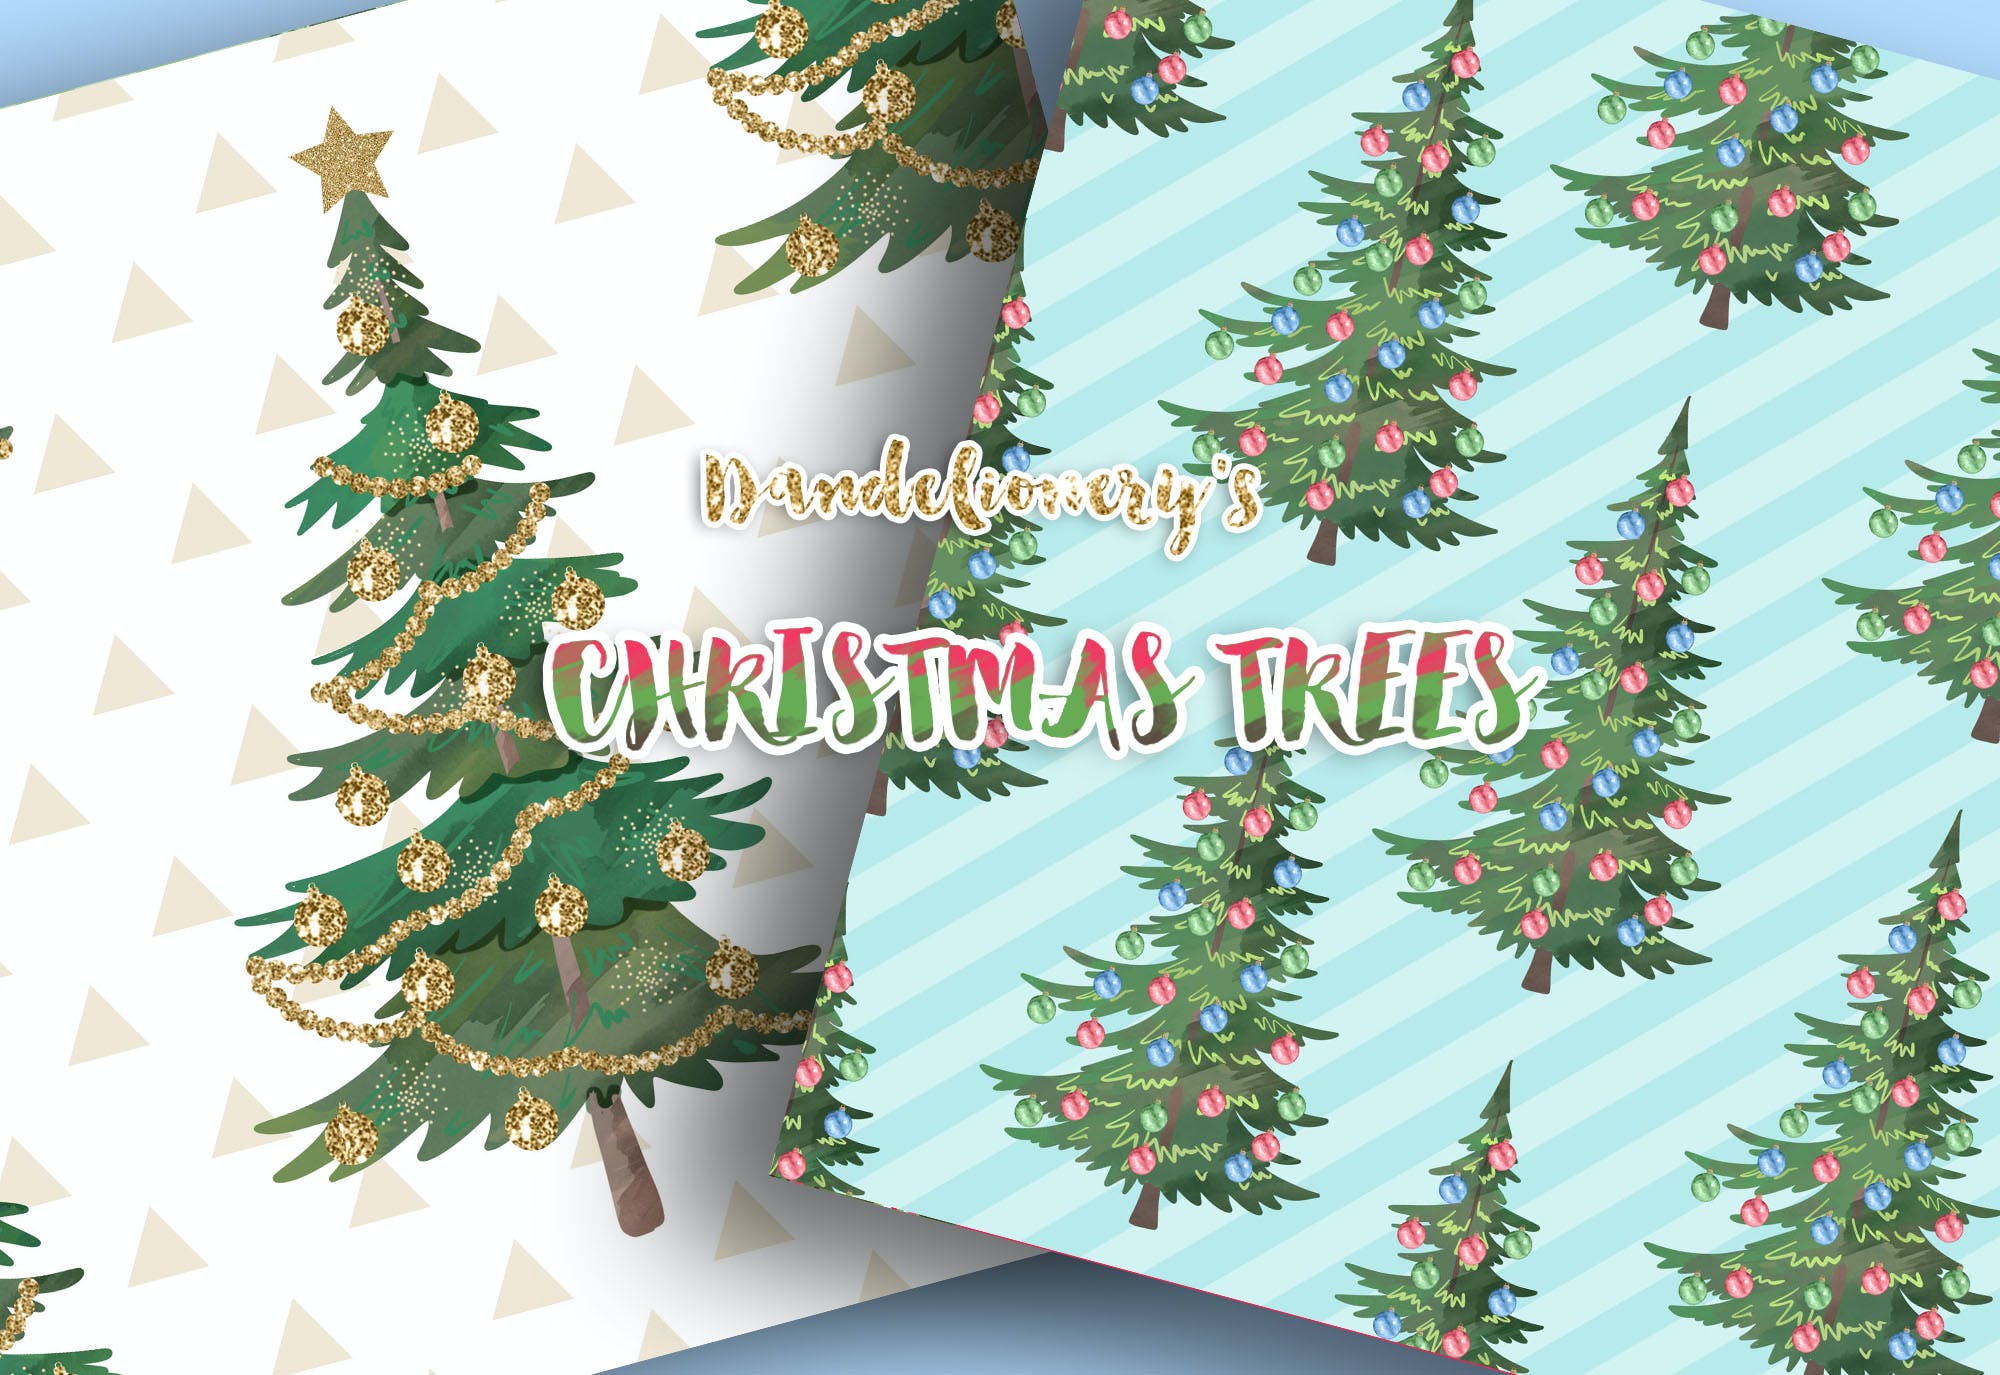 水彩图案背景圣诞树素材包 Christmas tree digital paper pack设计素材模板